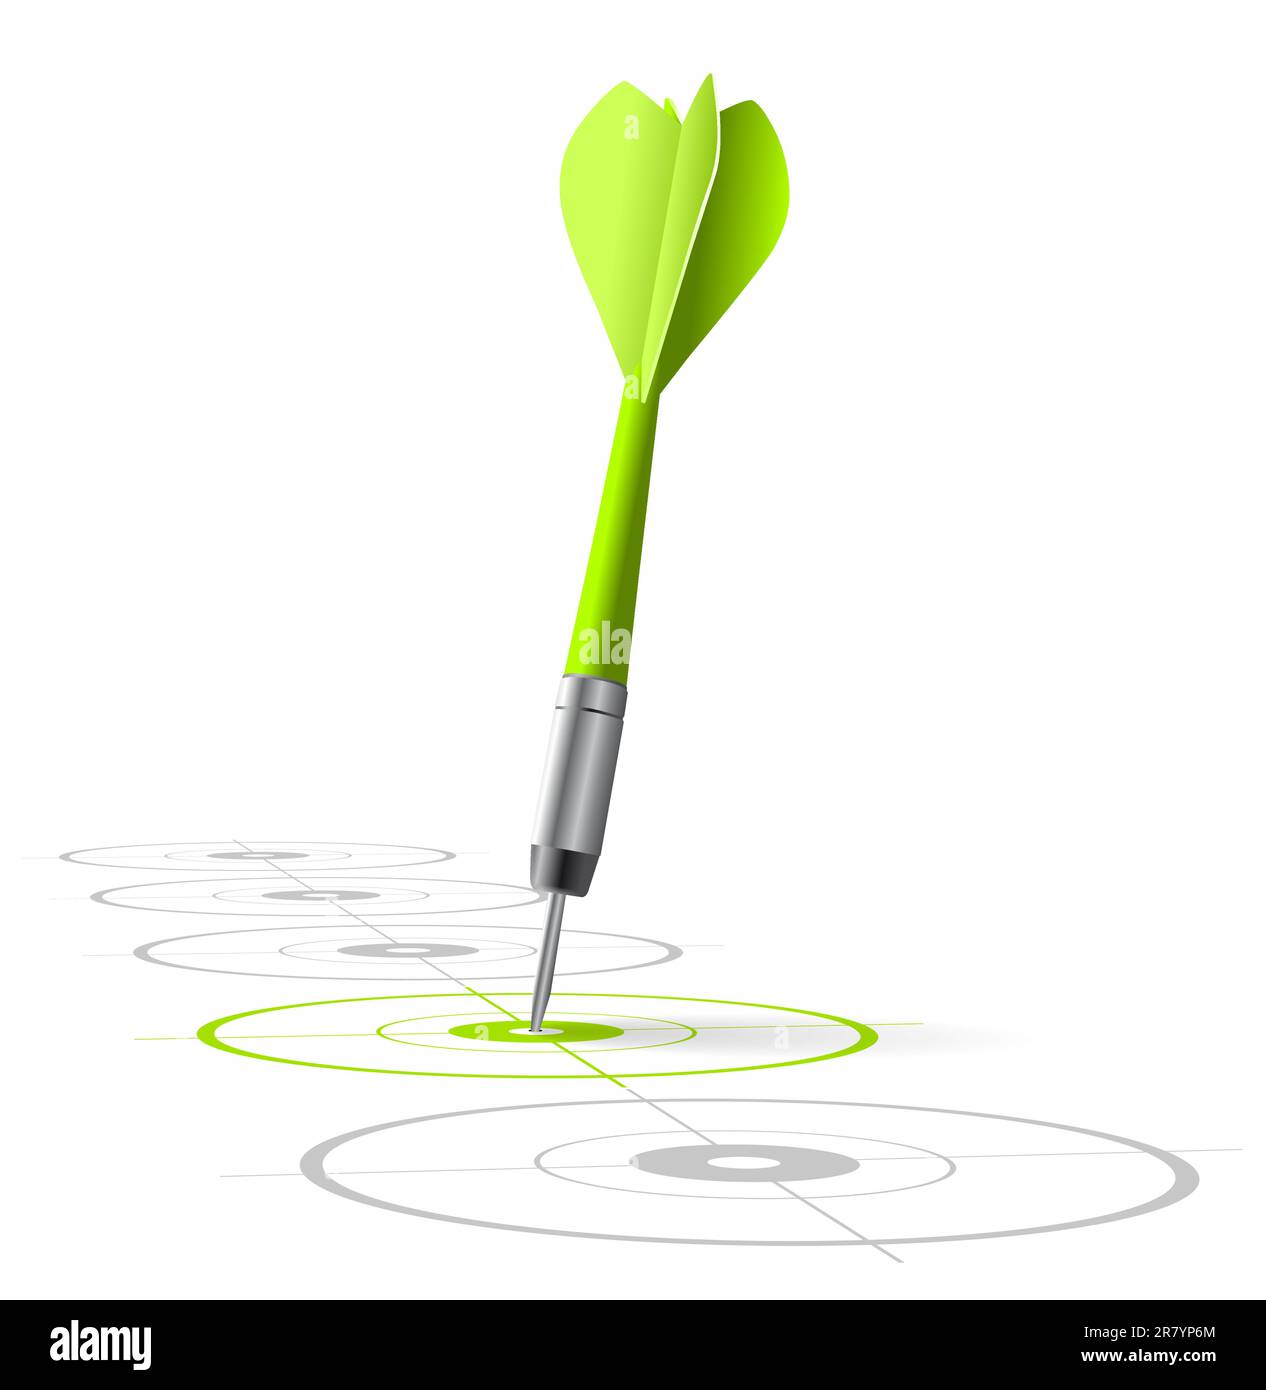 símbolo de estrategia de marketing. Un dardo verde golpeando el centro de un objetivo con muchos otros blancos grises en una fila. Archivo vectorial, fondo blanco Ilustración del Vector